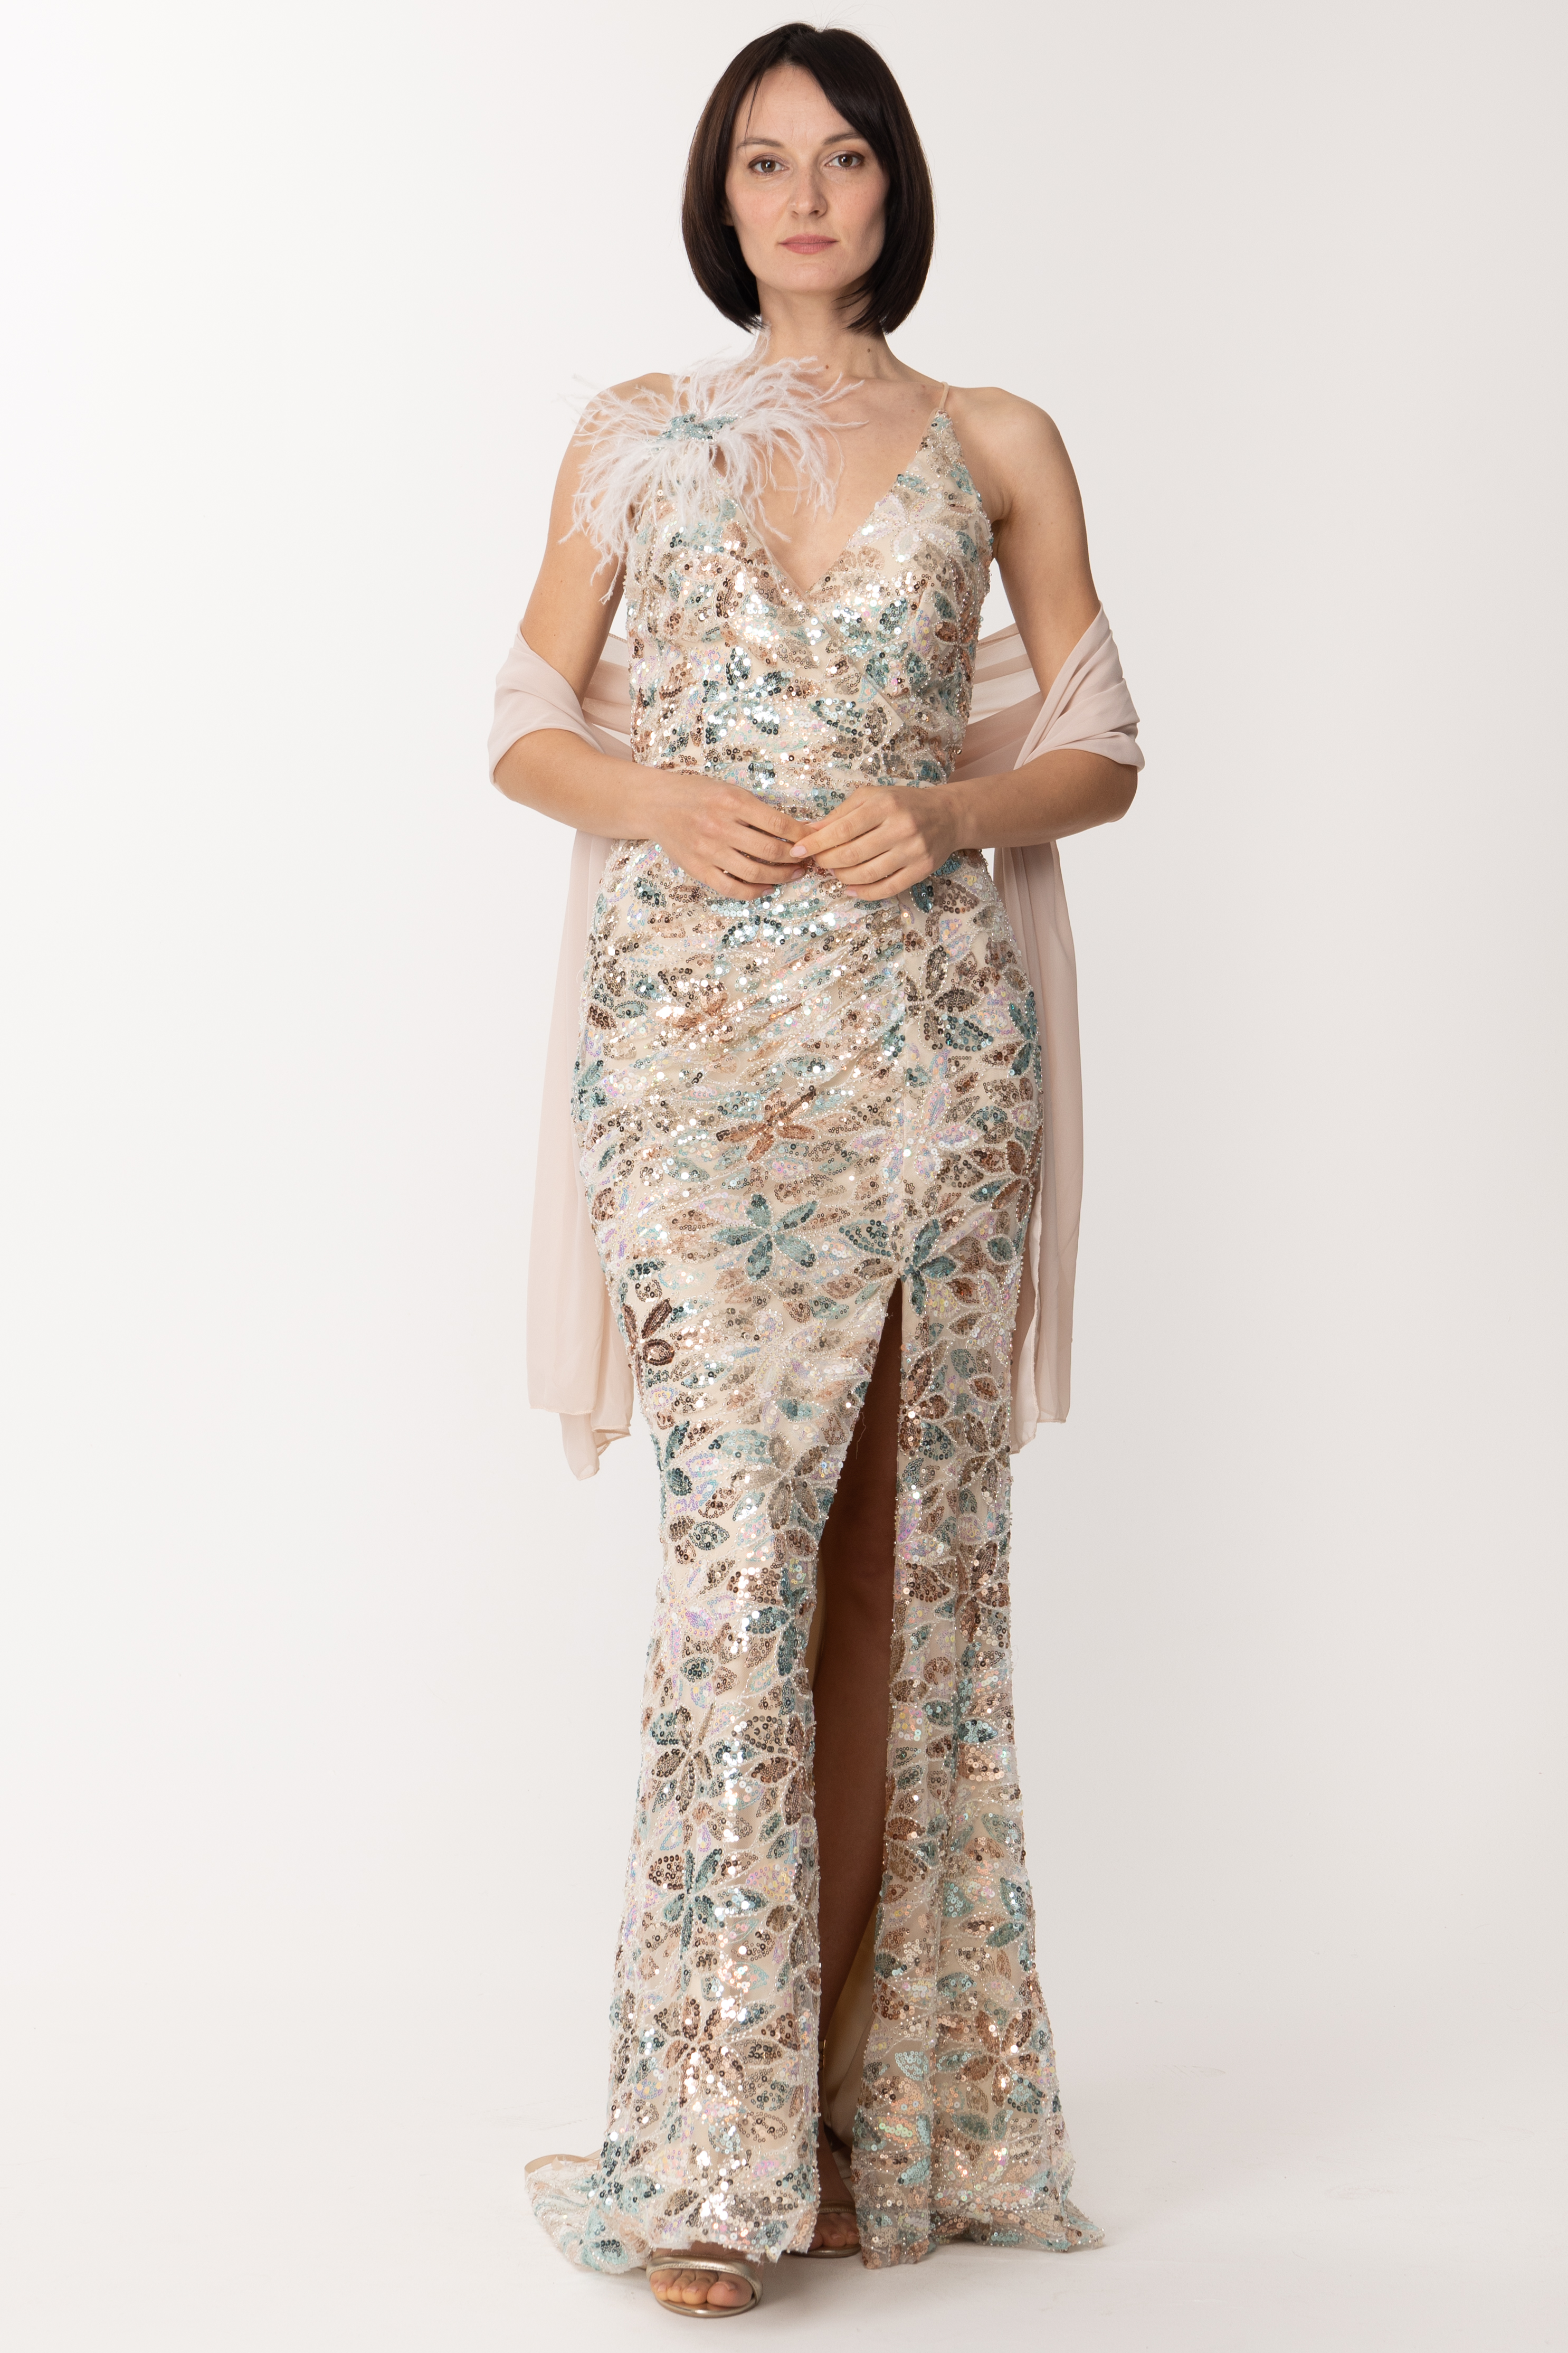 Vista previa: Fabiana Ferri Vestido largo con lentejuelas y accesorio de plumas Salvia